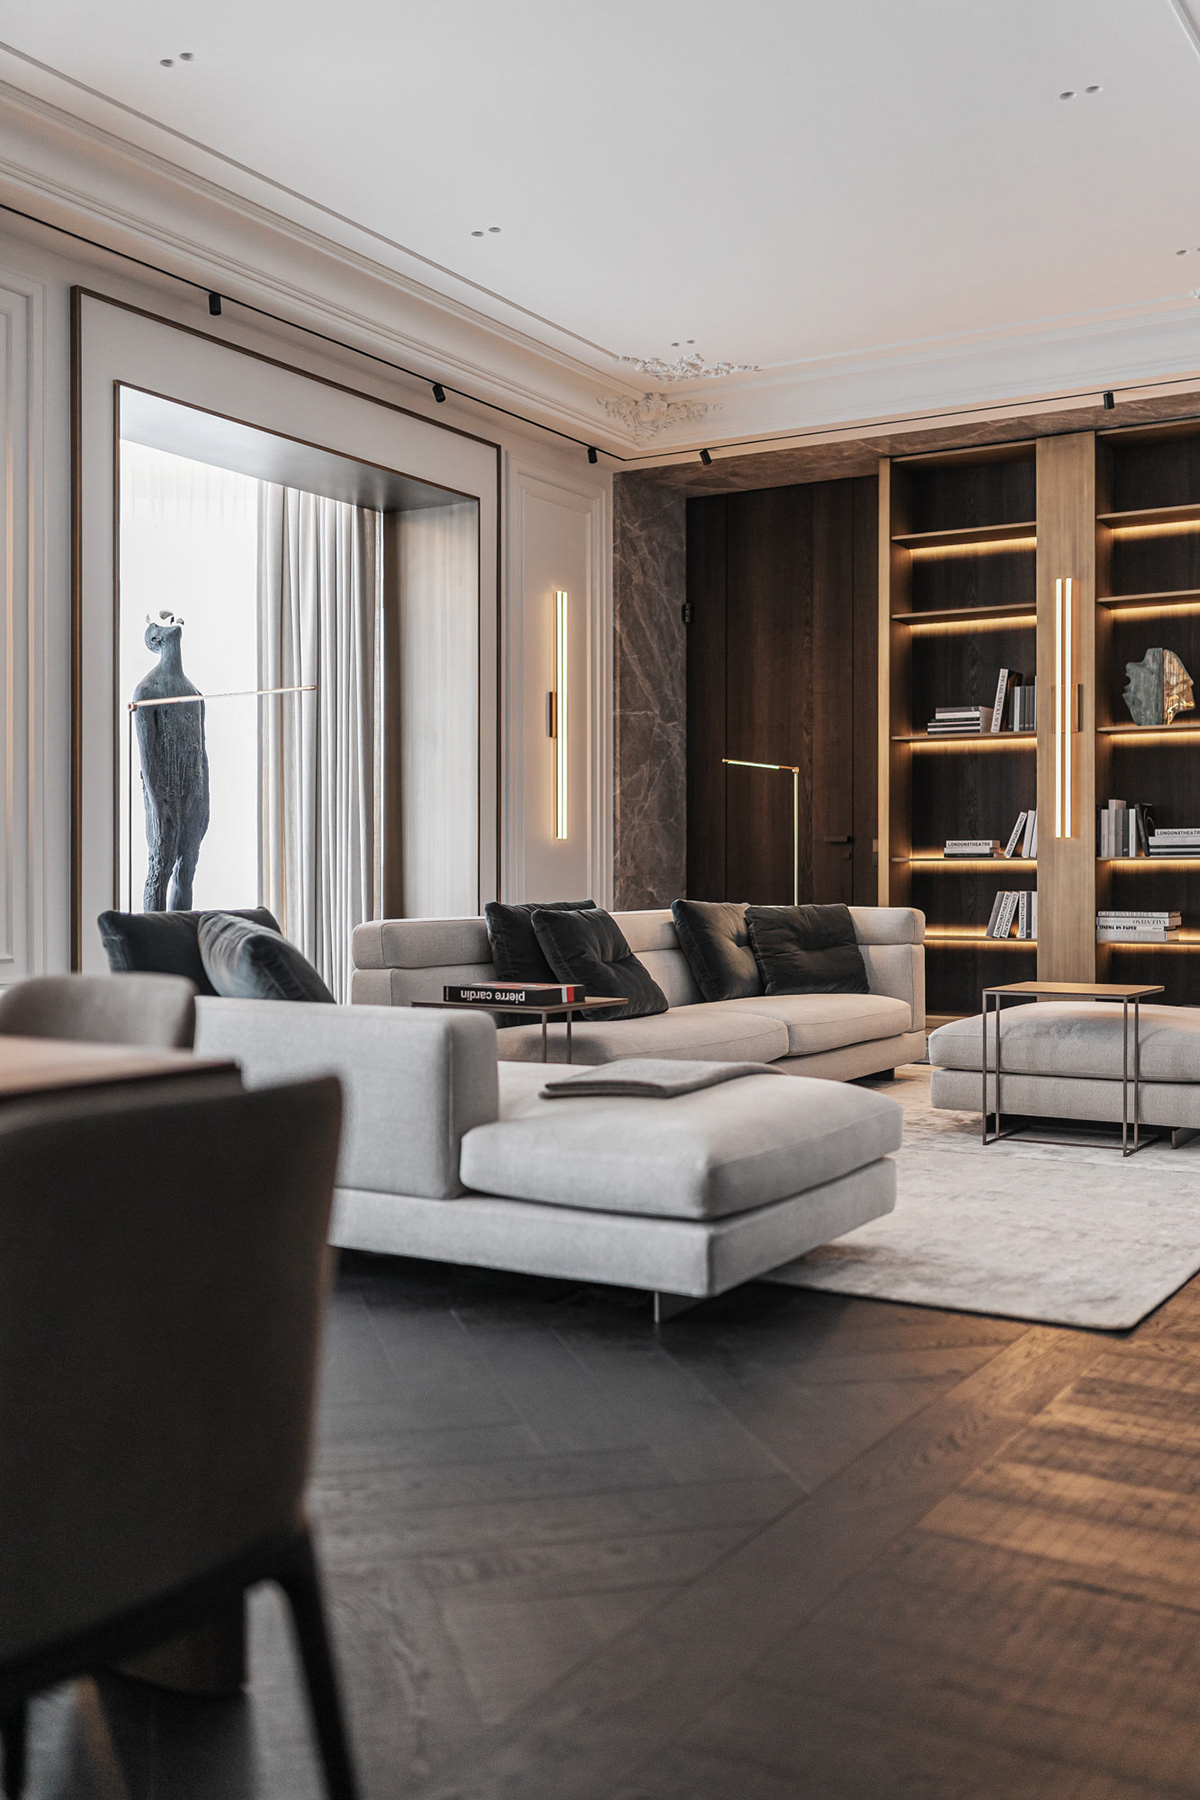 Contemporary Classic Empire Style Furniture empire style interiors